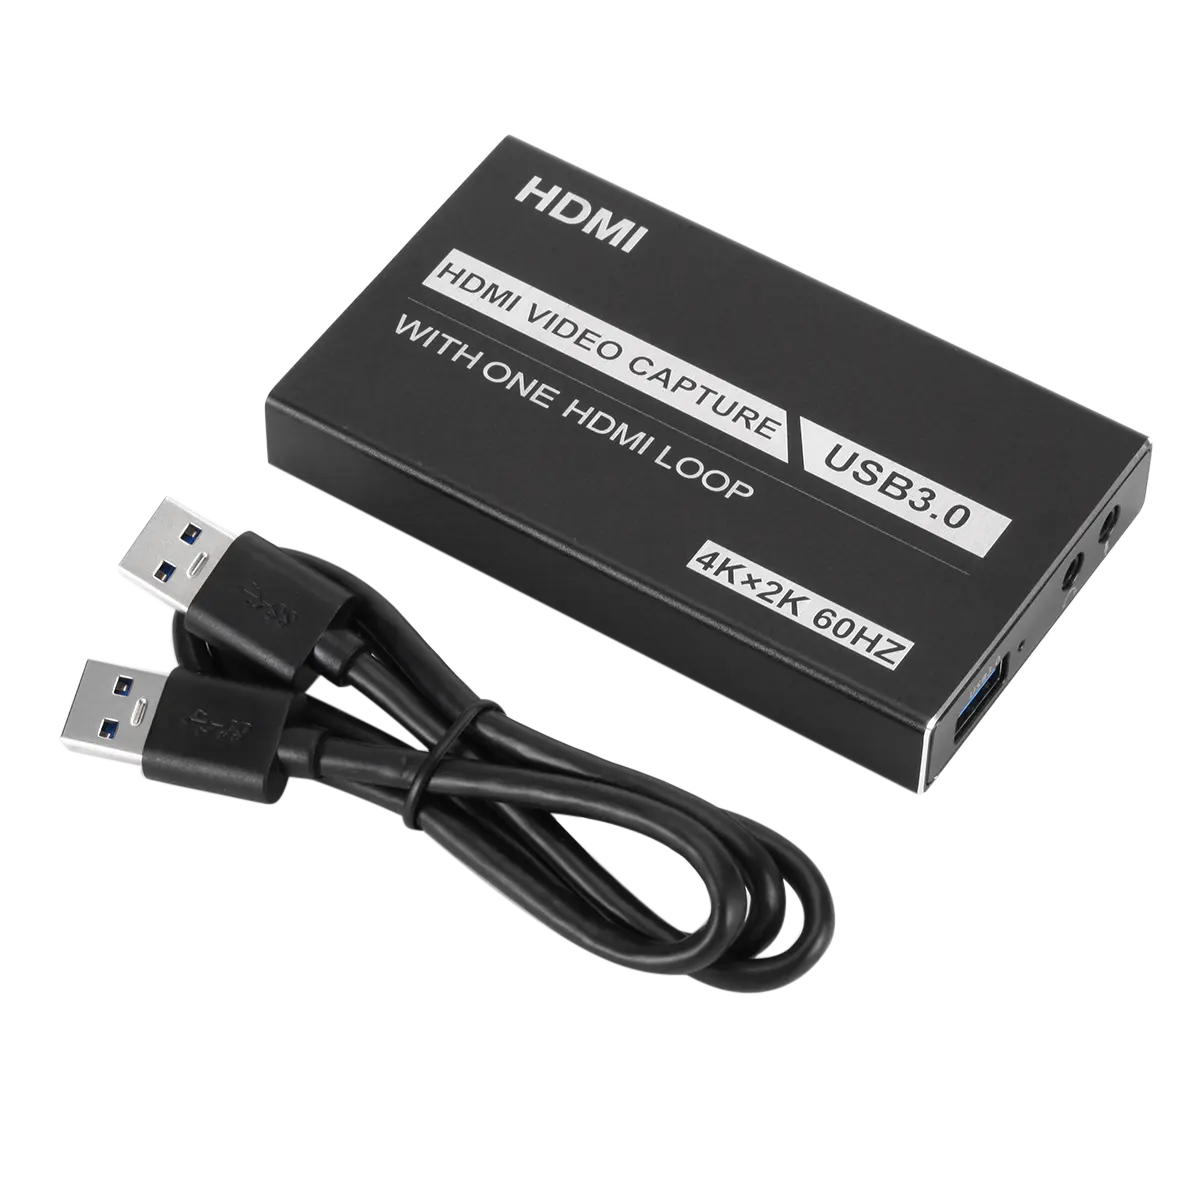 Grosir Pabrik HD HDMI Ke USB 3.0 Mobile Game Kotak Penangkap Langsung Audio HDMI dan Video 4K Capture Card